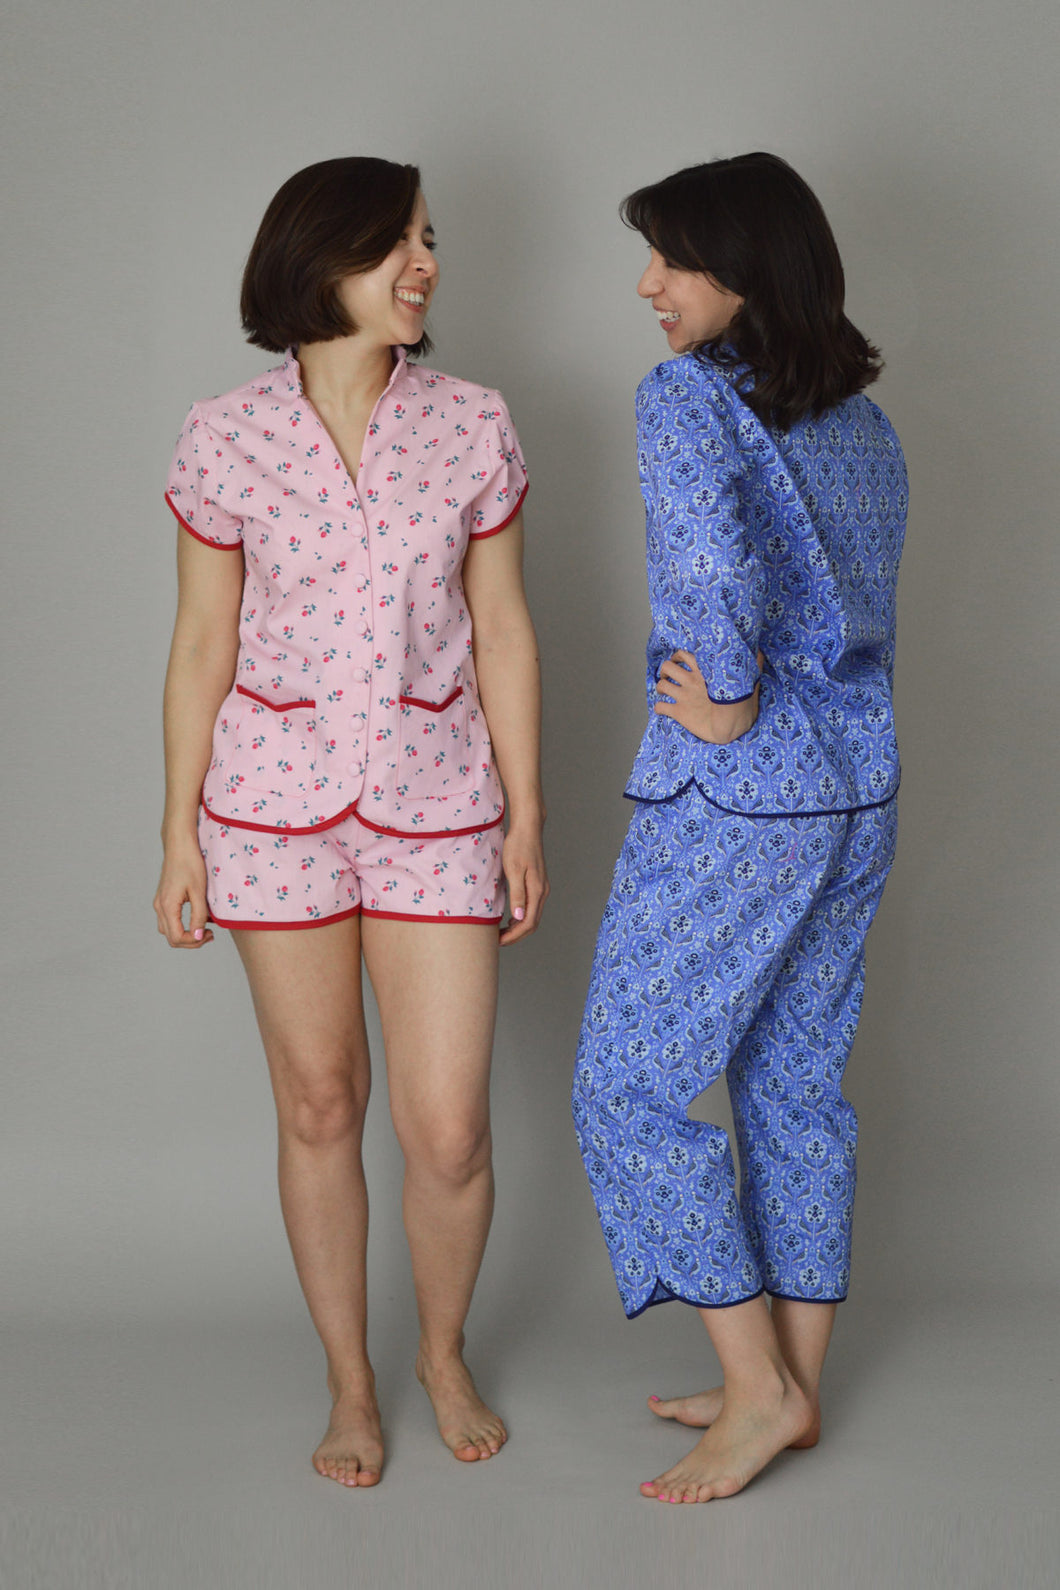 The Piccadilly Pyjamas - Nina Lee - Patterns - Nina Lee - Sew Me Sunshine